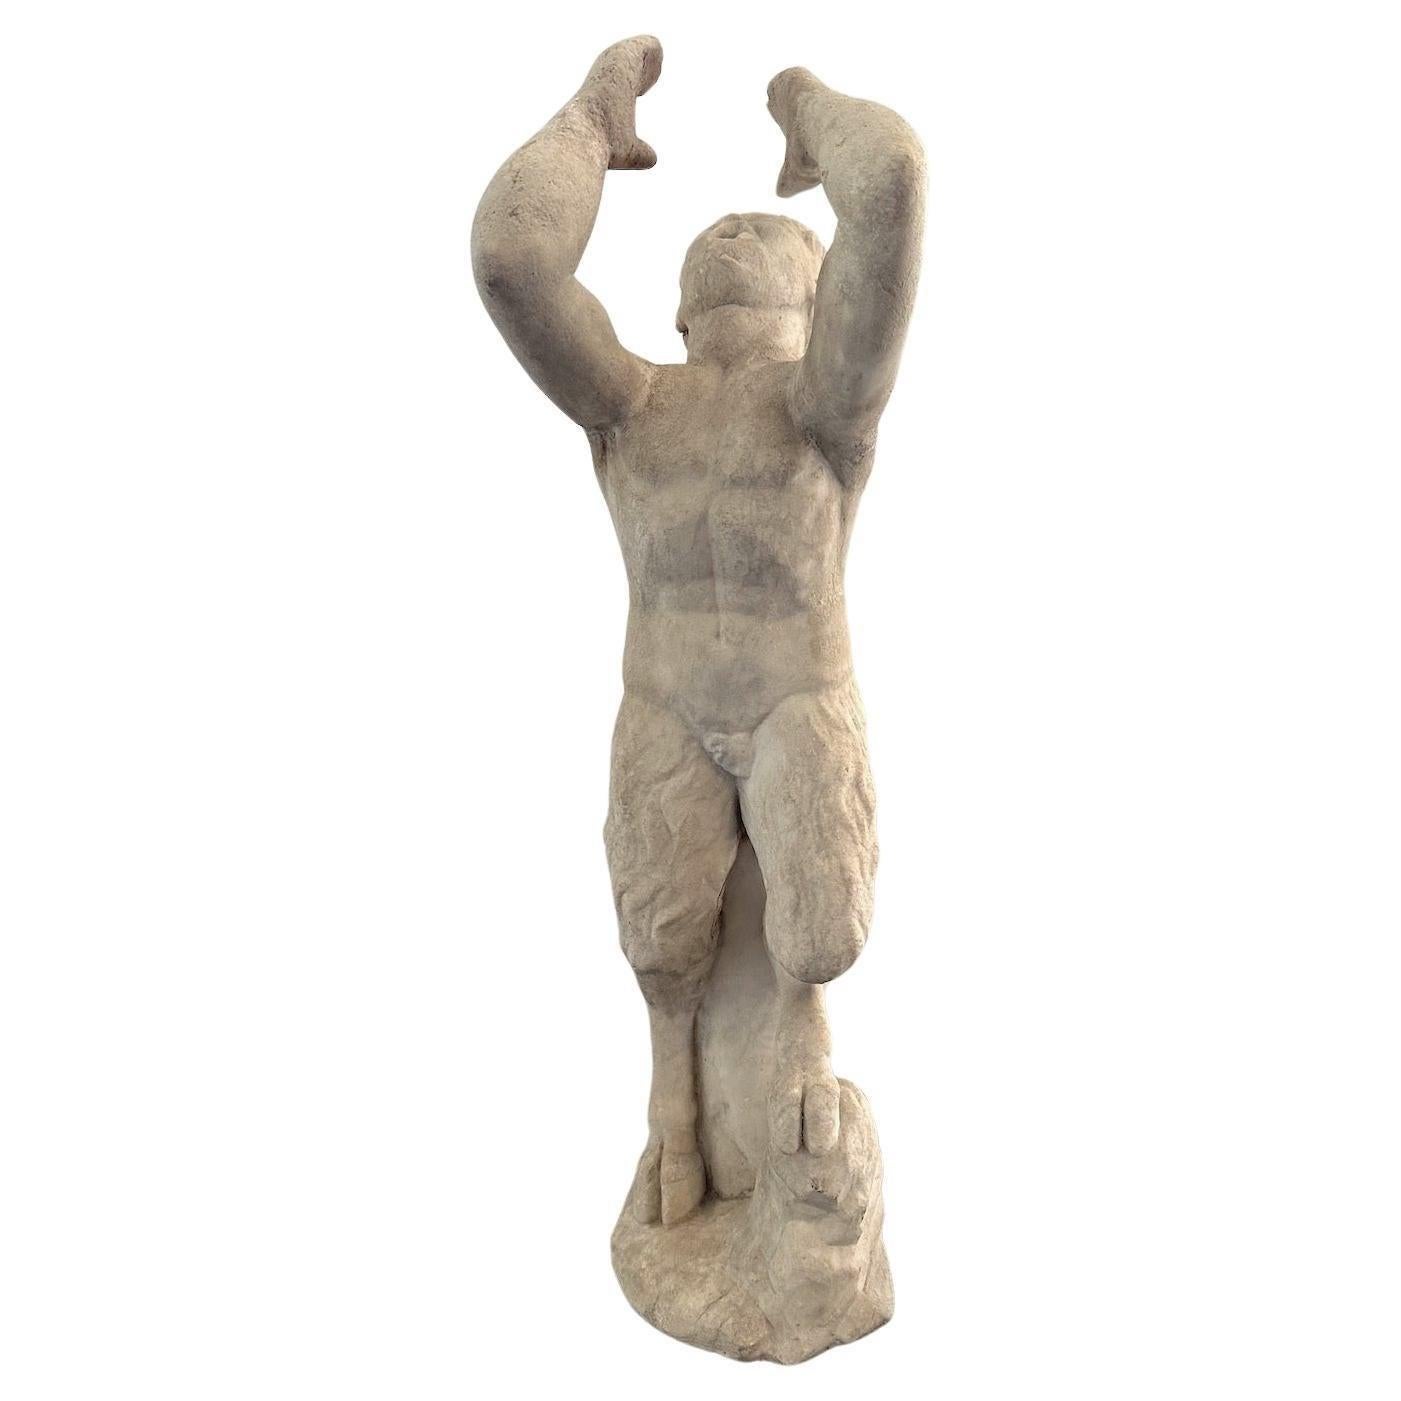 Eine römische Skulptur aus Carrara-Marmor, die den mythologischen griechischen Gott Pan als Springbrunnen darstellt.  Italien. 